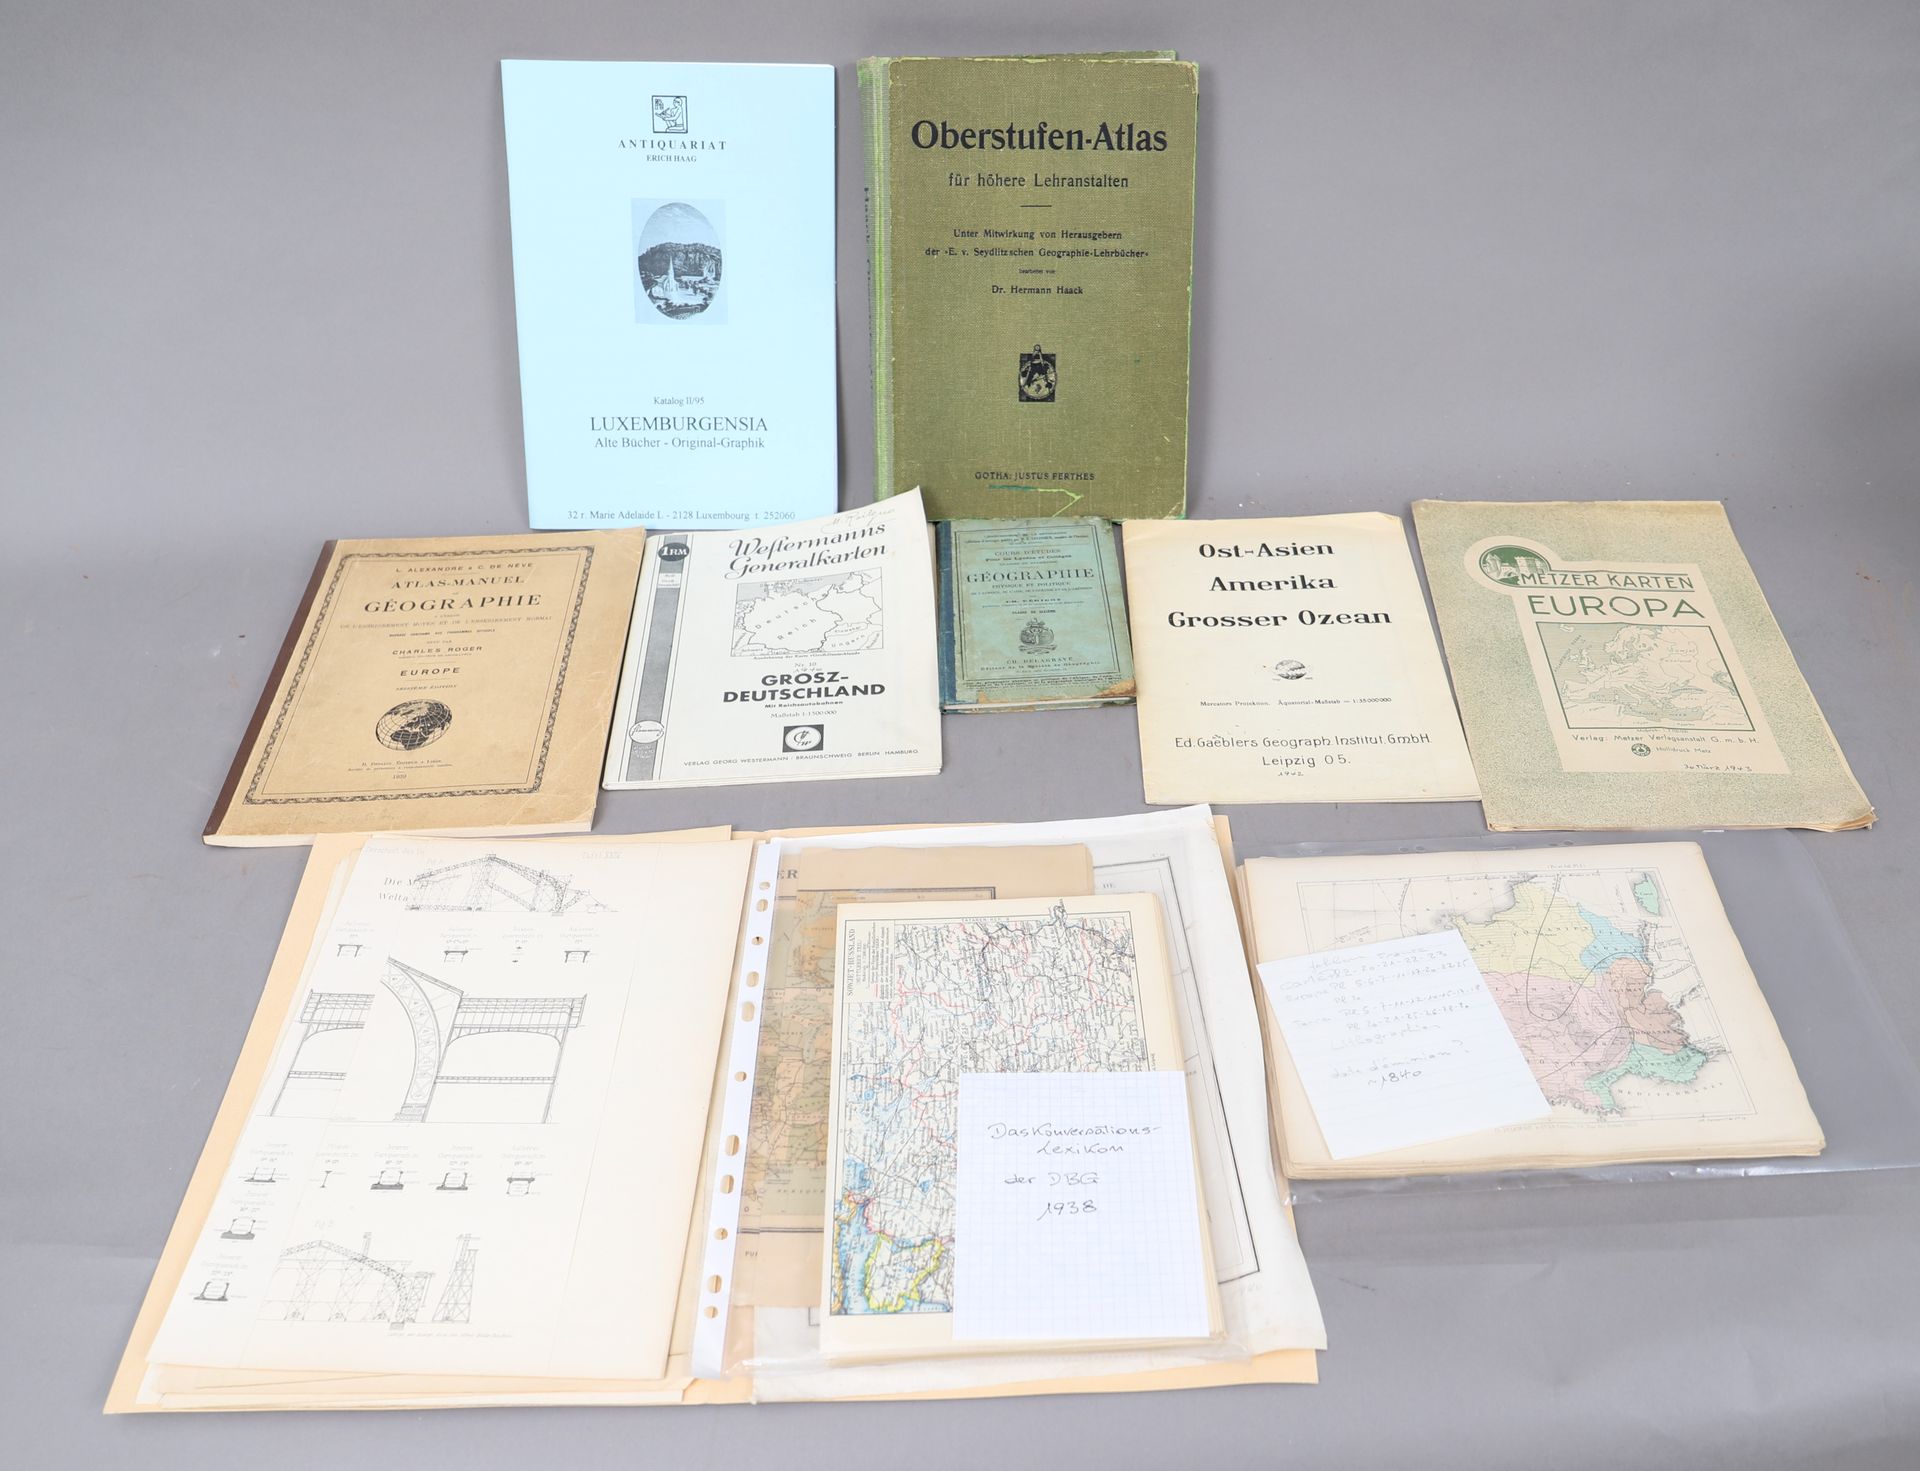 Null 一组10本图谱和地理学书籍

德文和法文

二十世纪上半叶